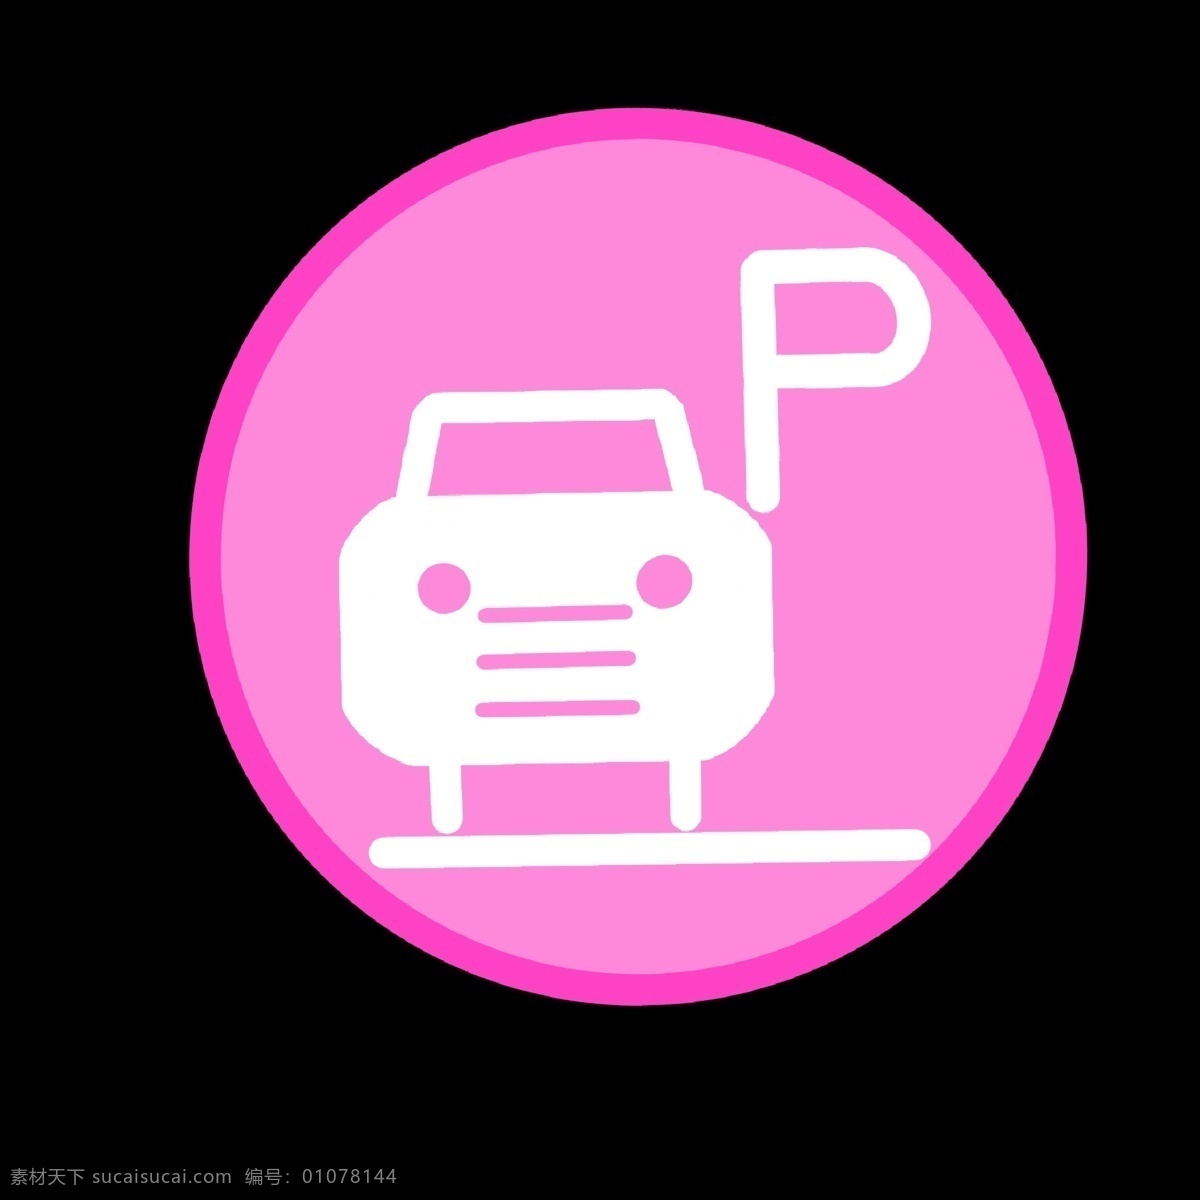 暖 色系 停车 小 图标 红色 粉色 停车场 停车指导图标 小汽车 p 公共 设施 矢量图 简洁 卡通 公共场所 专用 图案